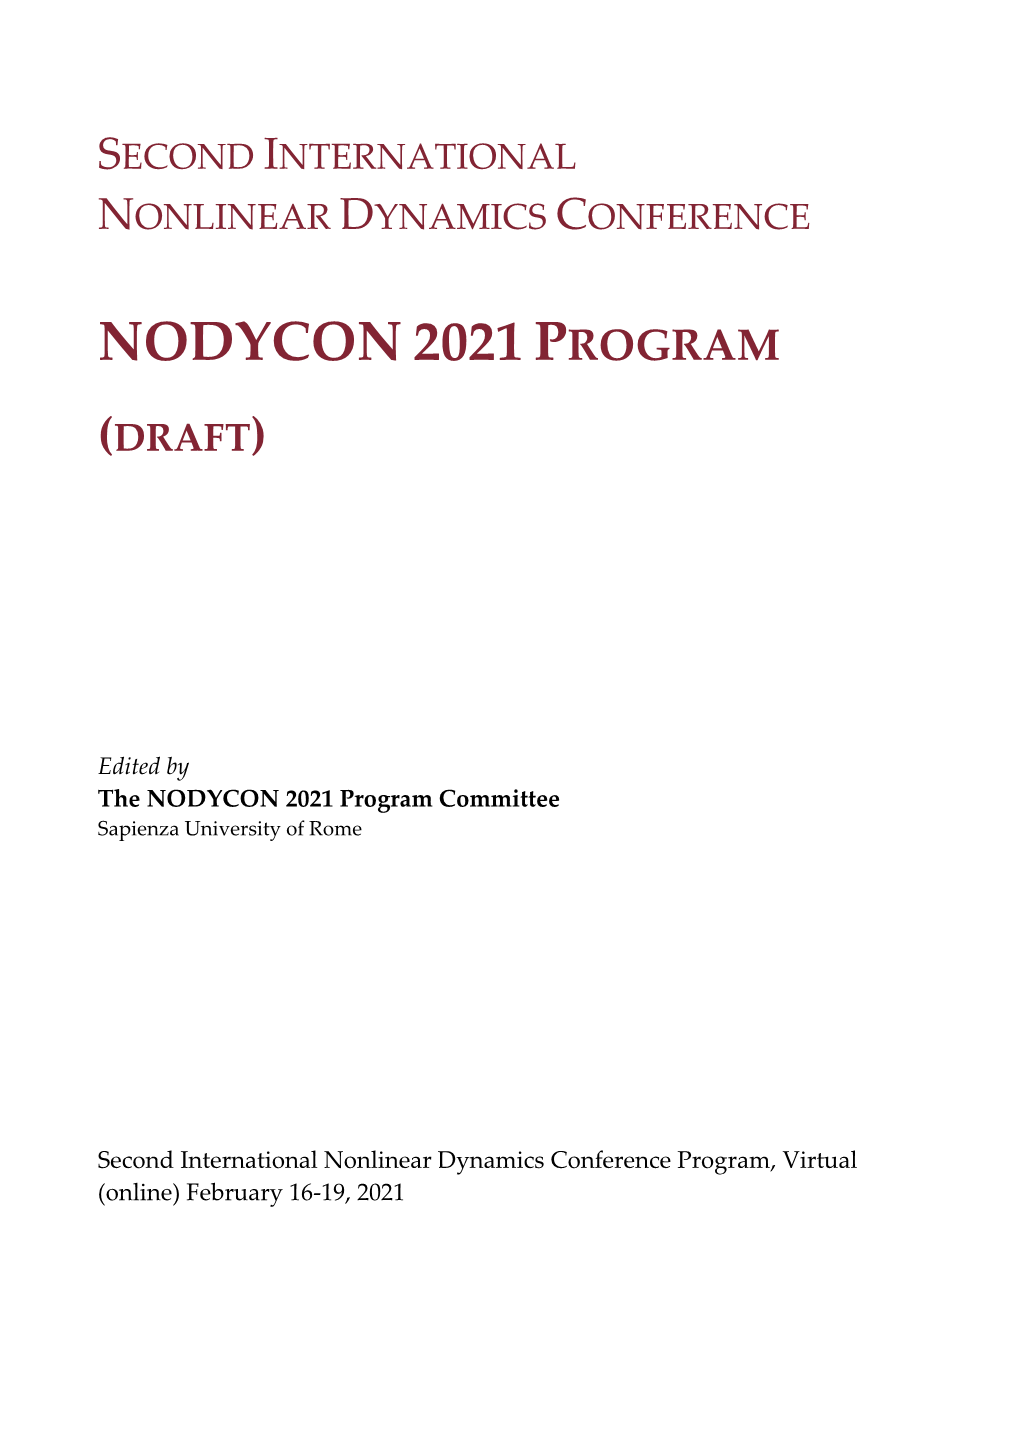 Nodycon 2021 Program